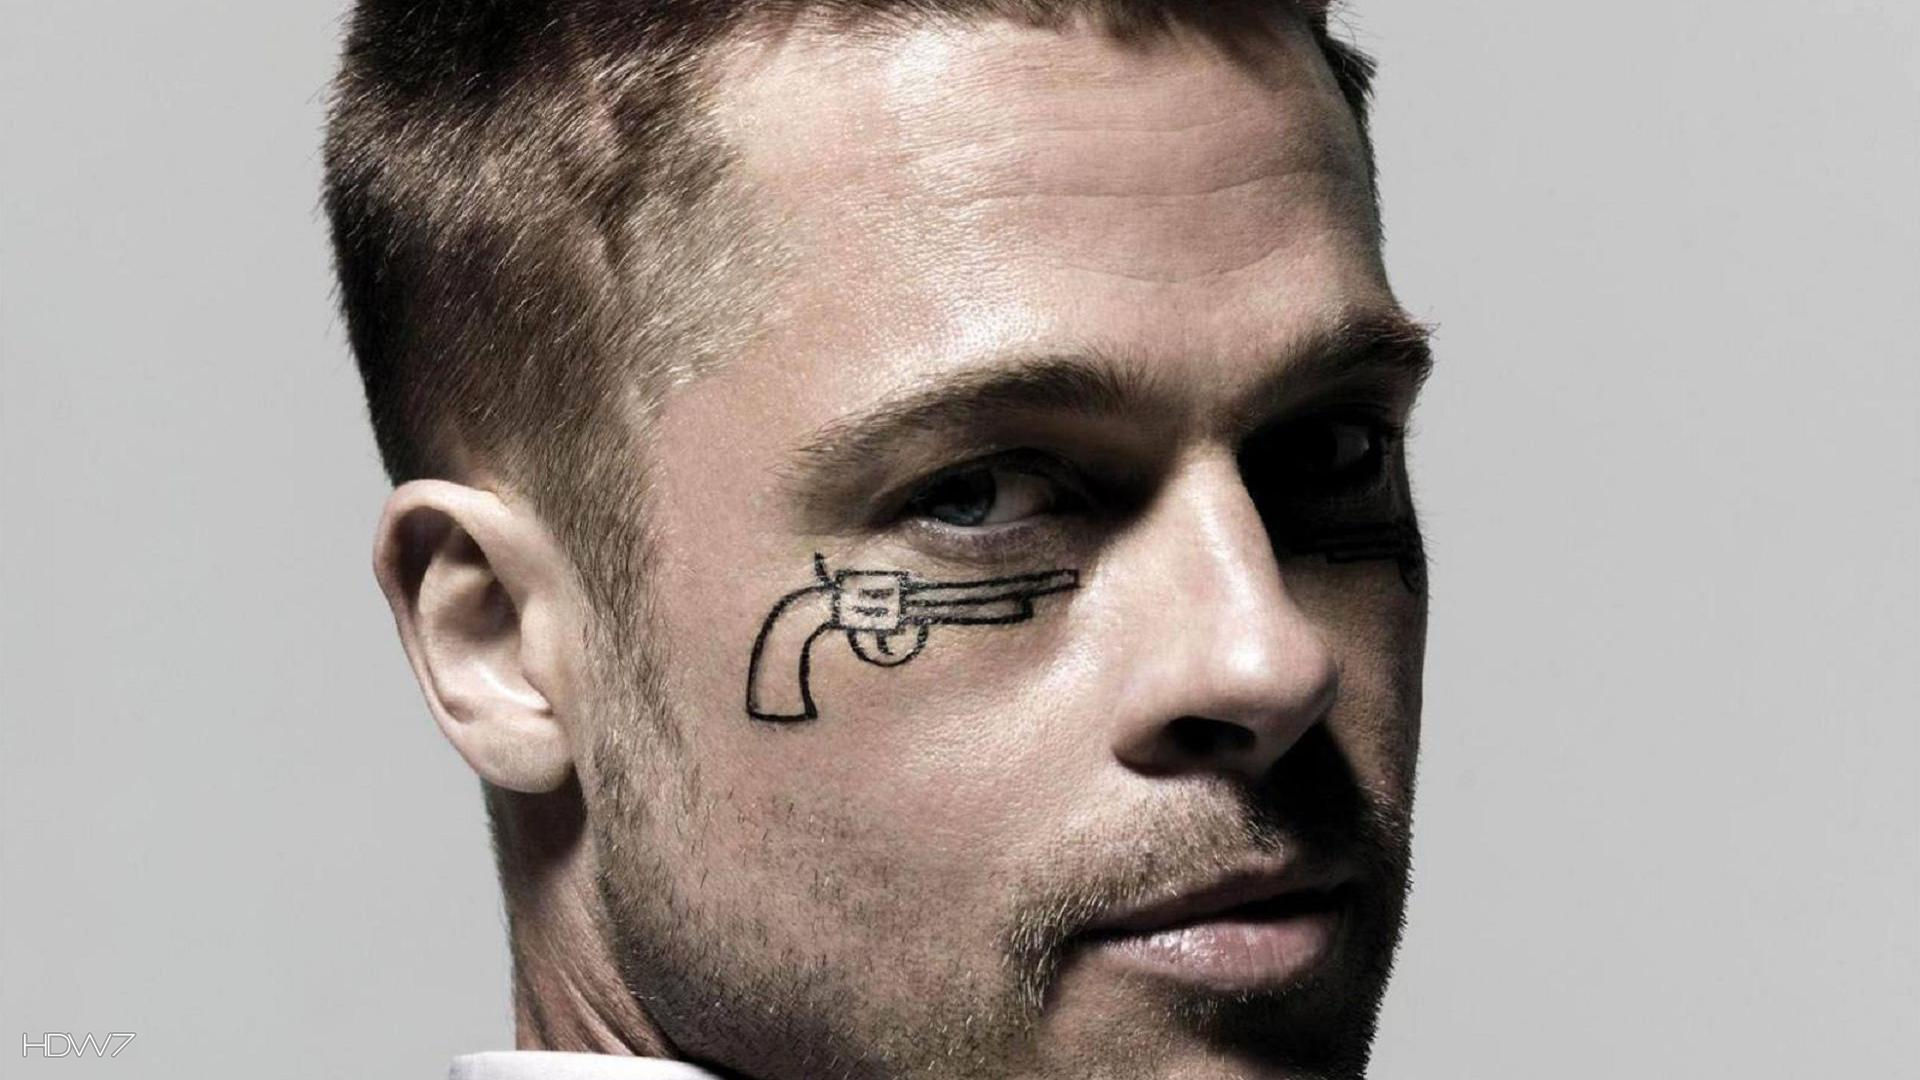 Wallpaper Name Brad Pitt Gun Tattoo On The Face Jpg Added